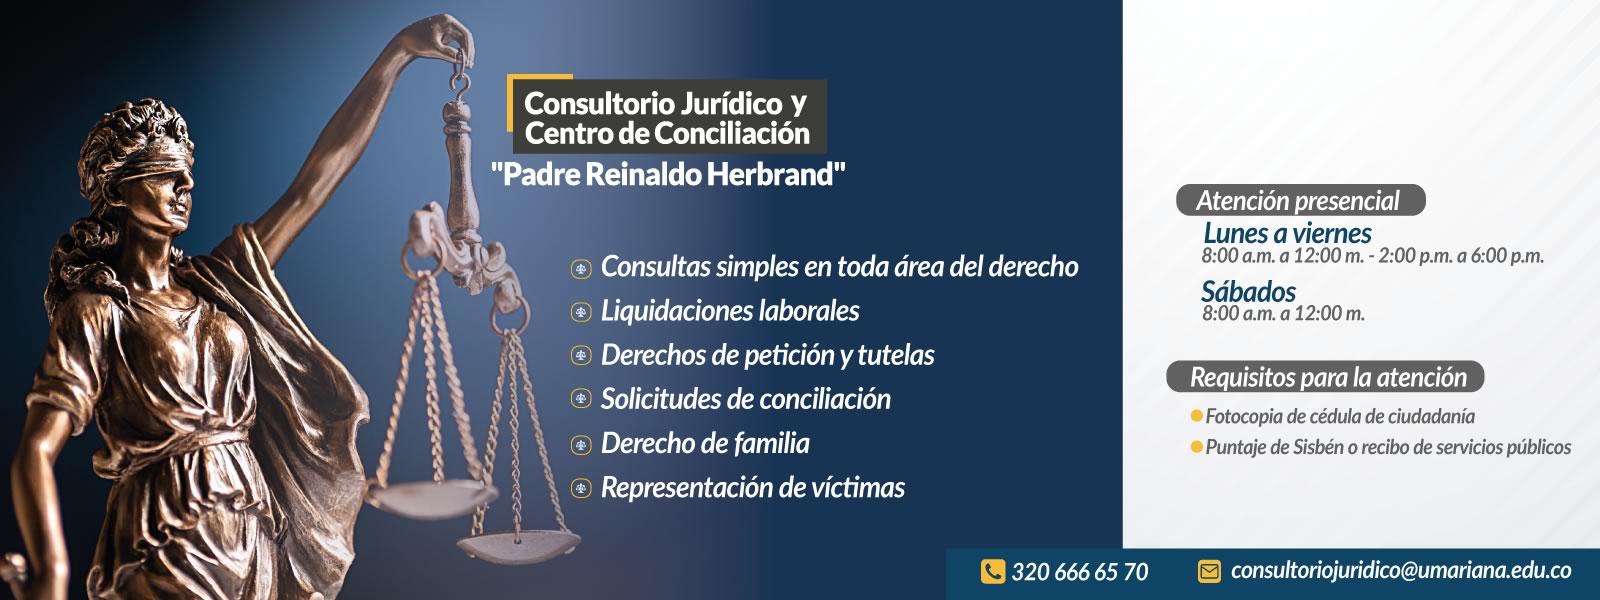 Consultorios Jurídicos Universidad Mariana